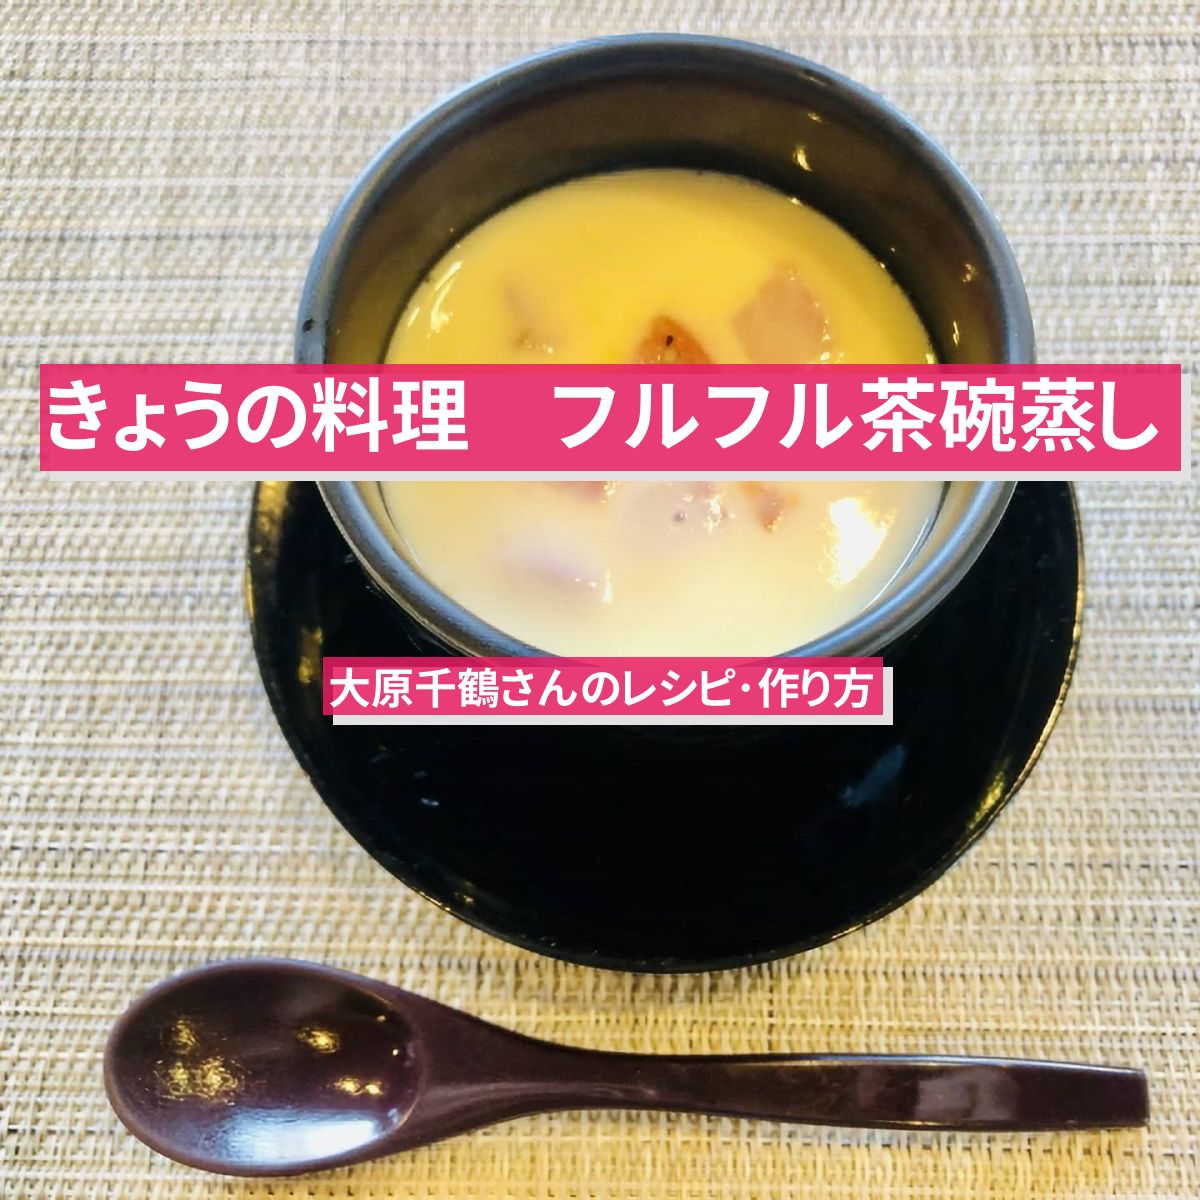 【きょうの料理】『フルフル茶碗蒸し』大原千鶴さんのレシピ･作り方